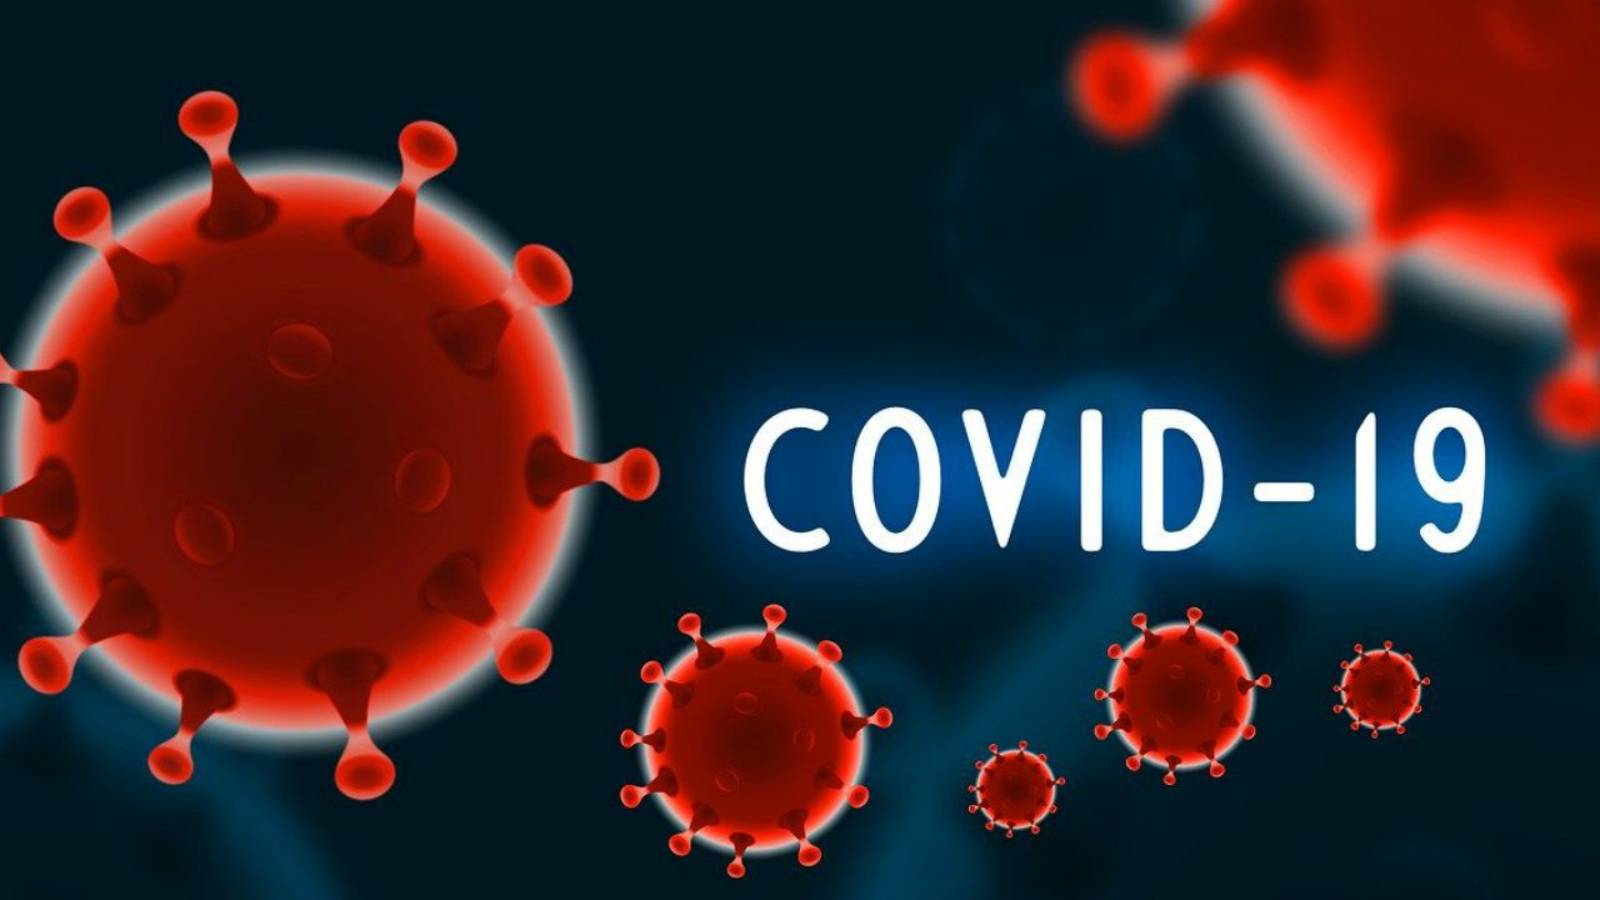 Aviso de la CE COVID-19 sobre la eficacia de la vacuna